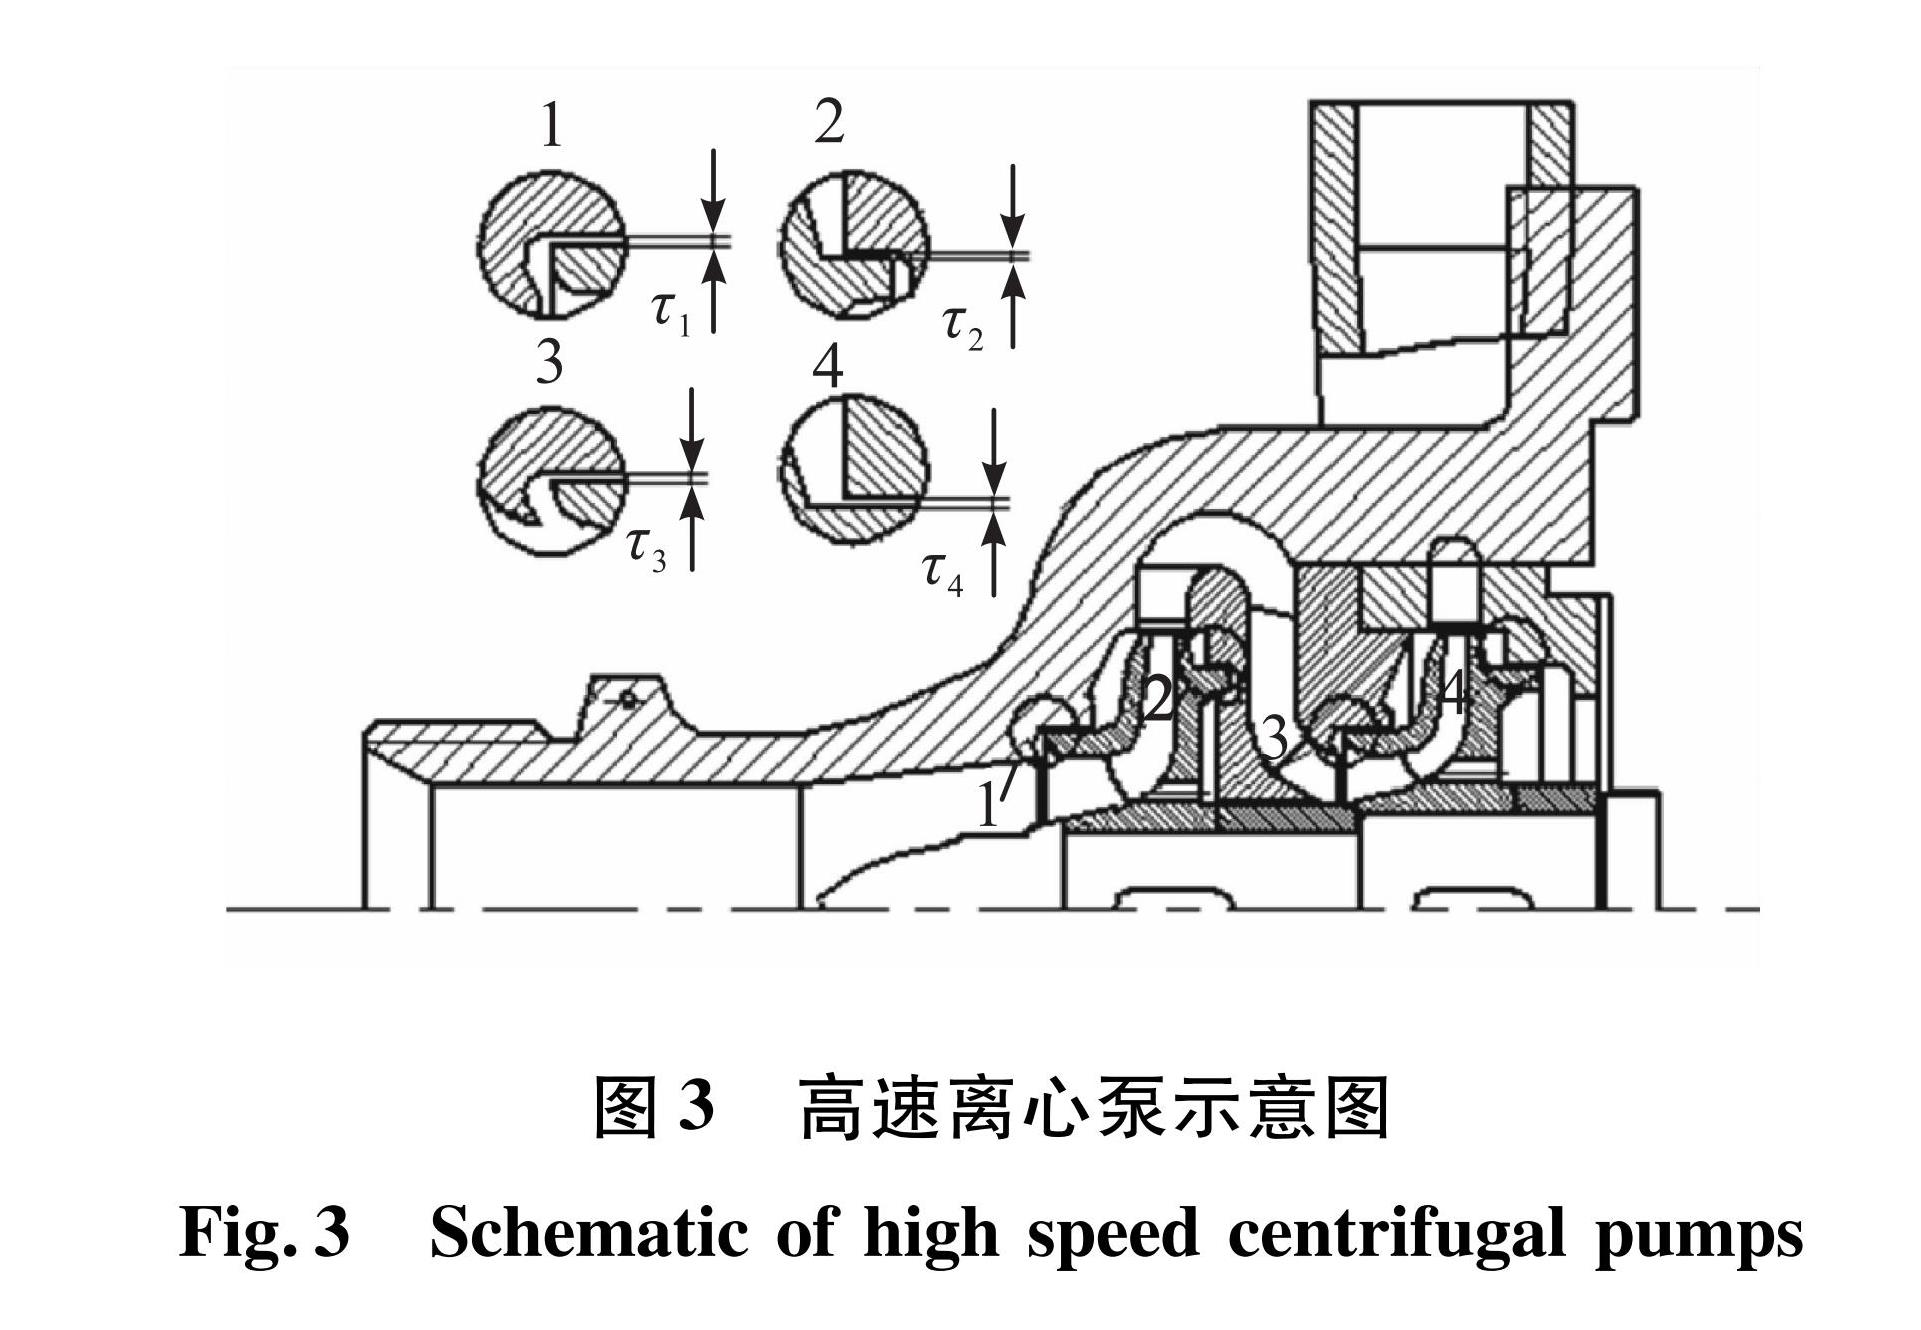 图3 高速离心泵示意图<br/>Fig.3 Schematic of high speed centrifugal pumps